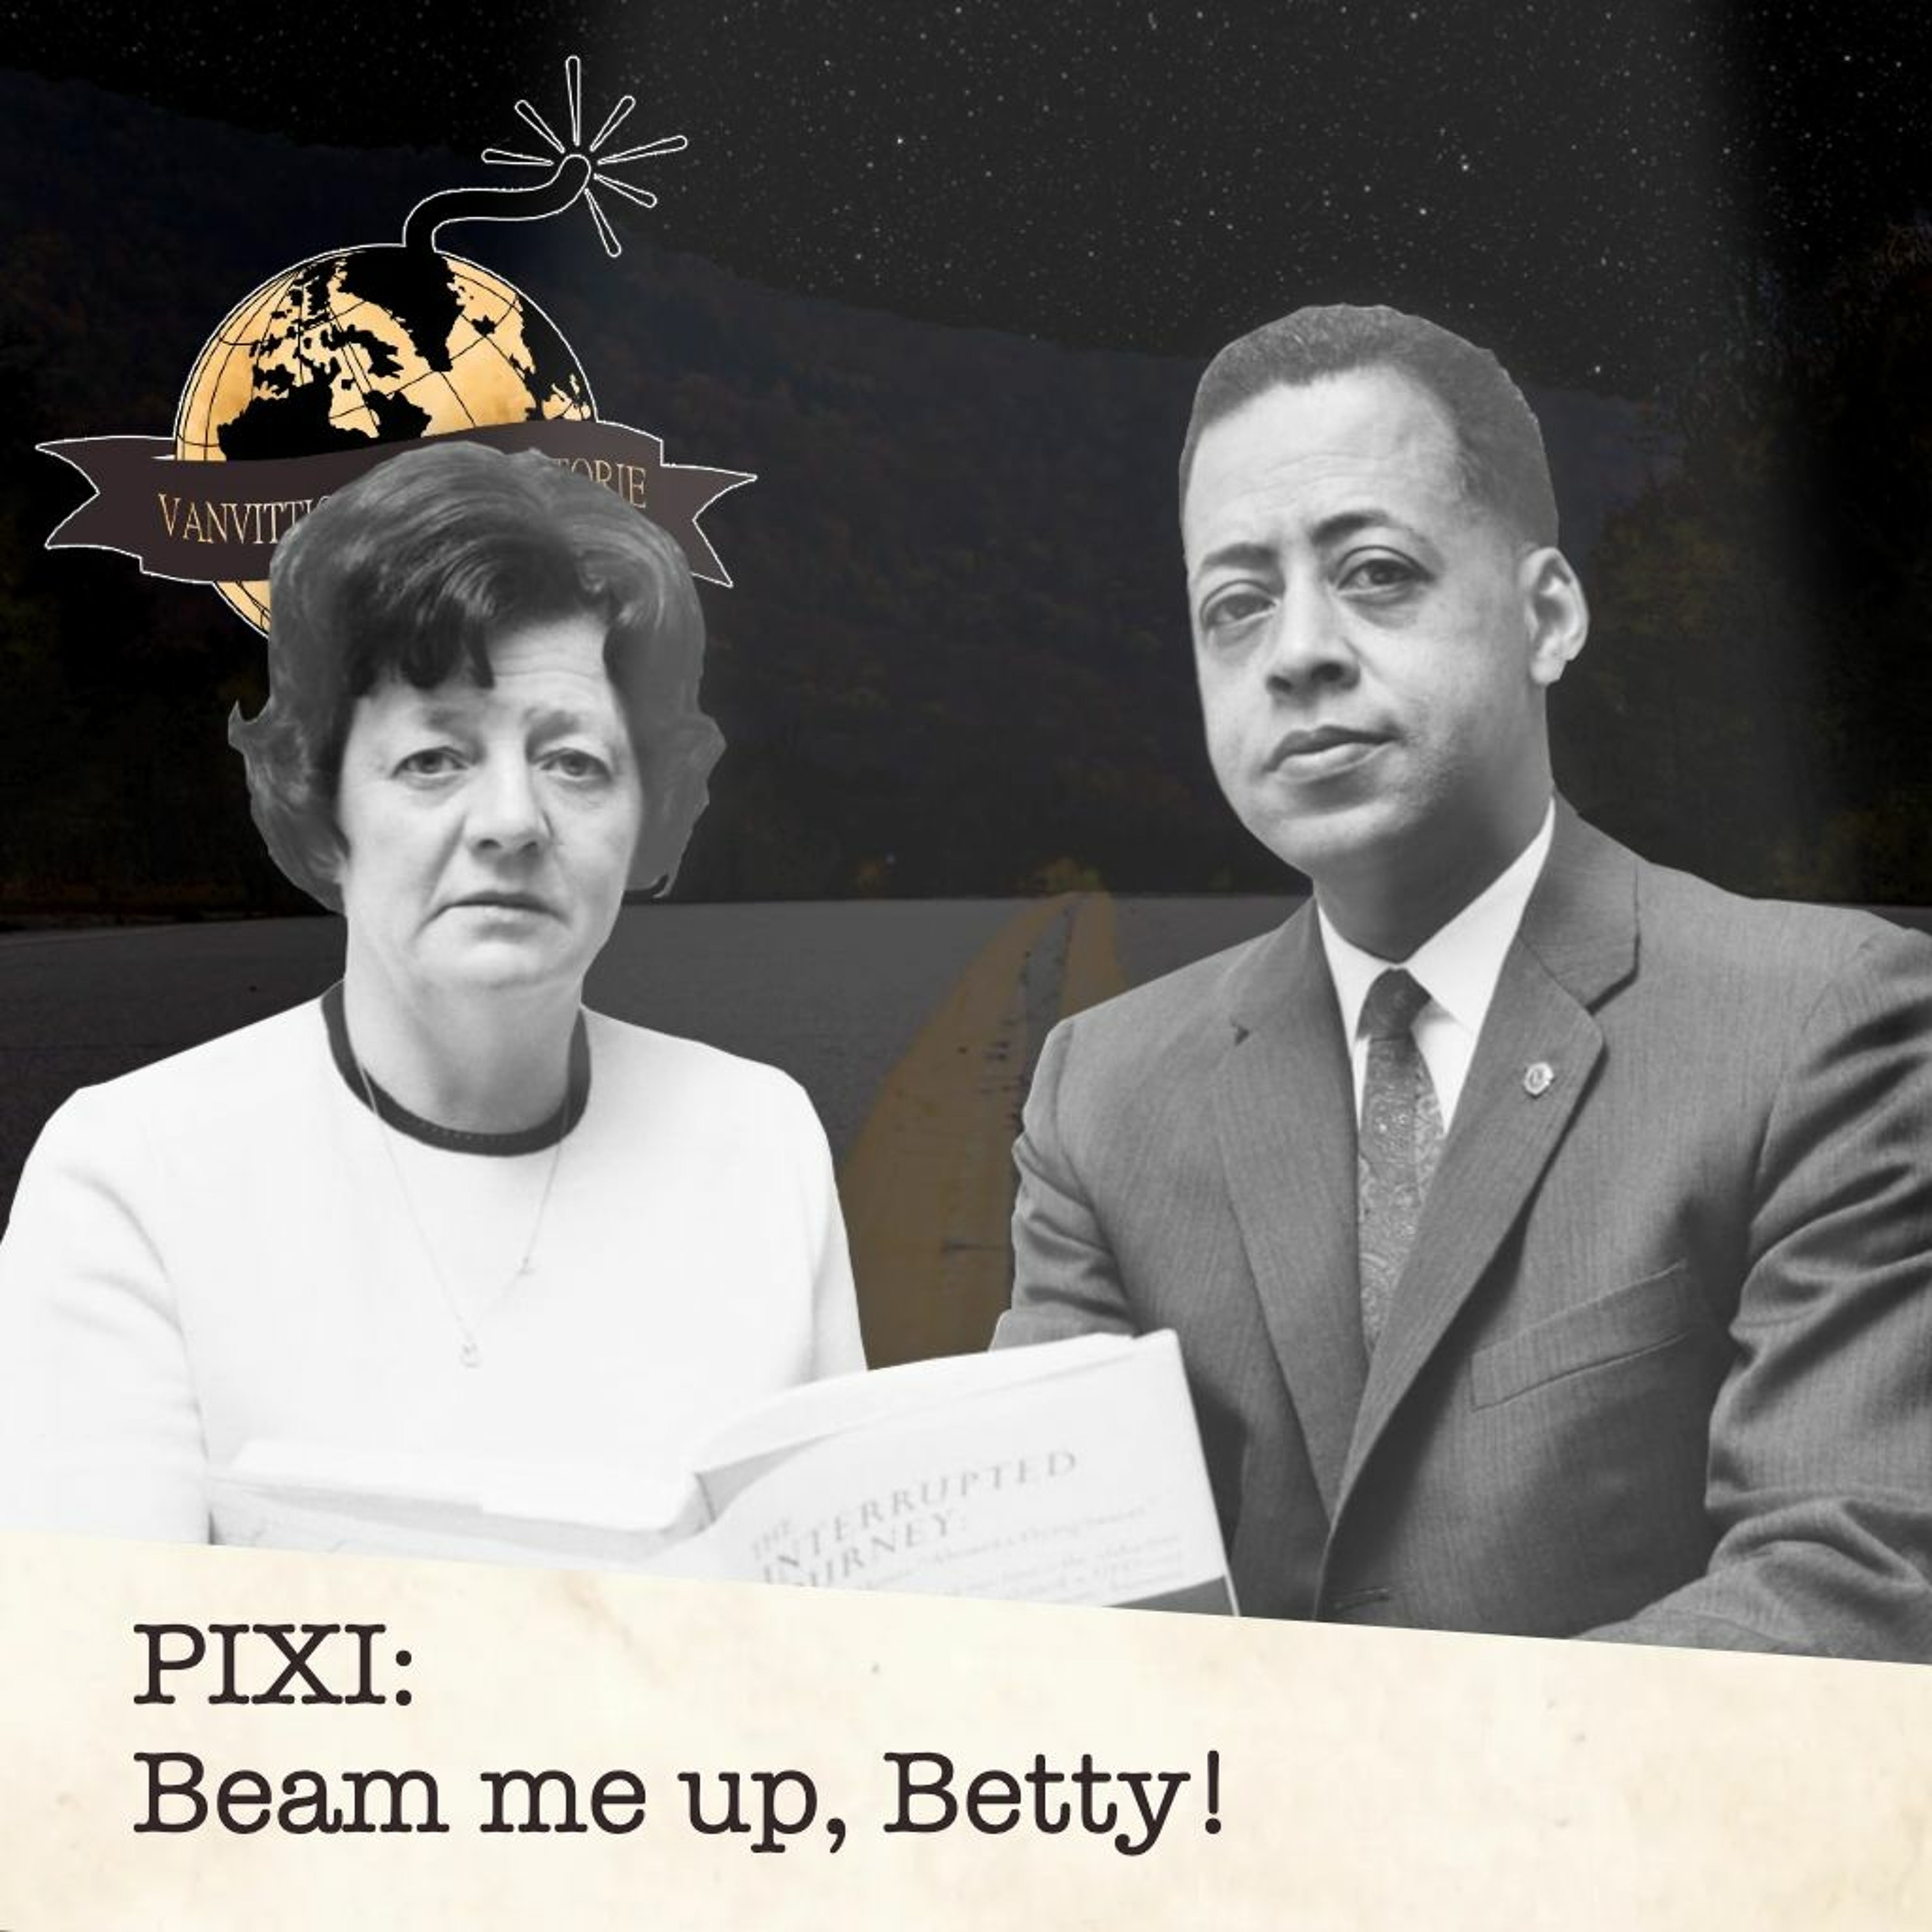 PIXI: Beam me up, Betty!